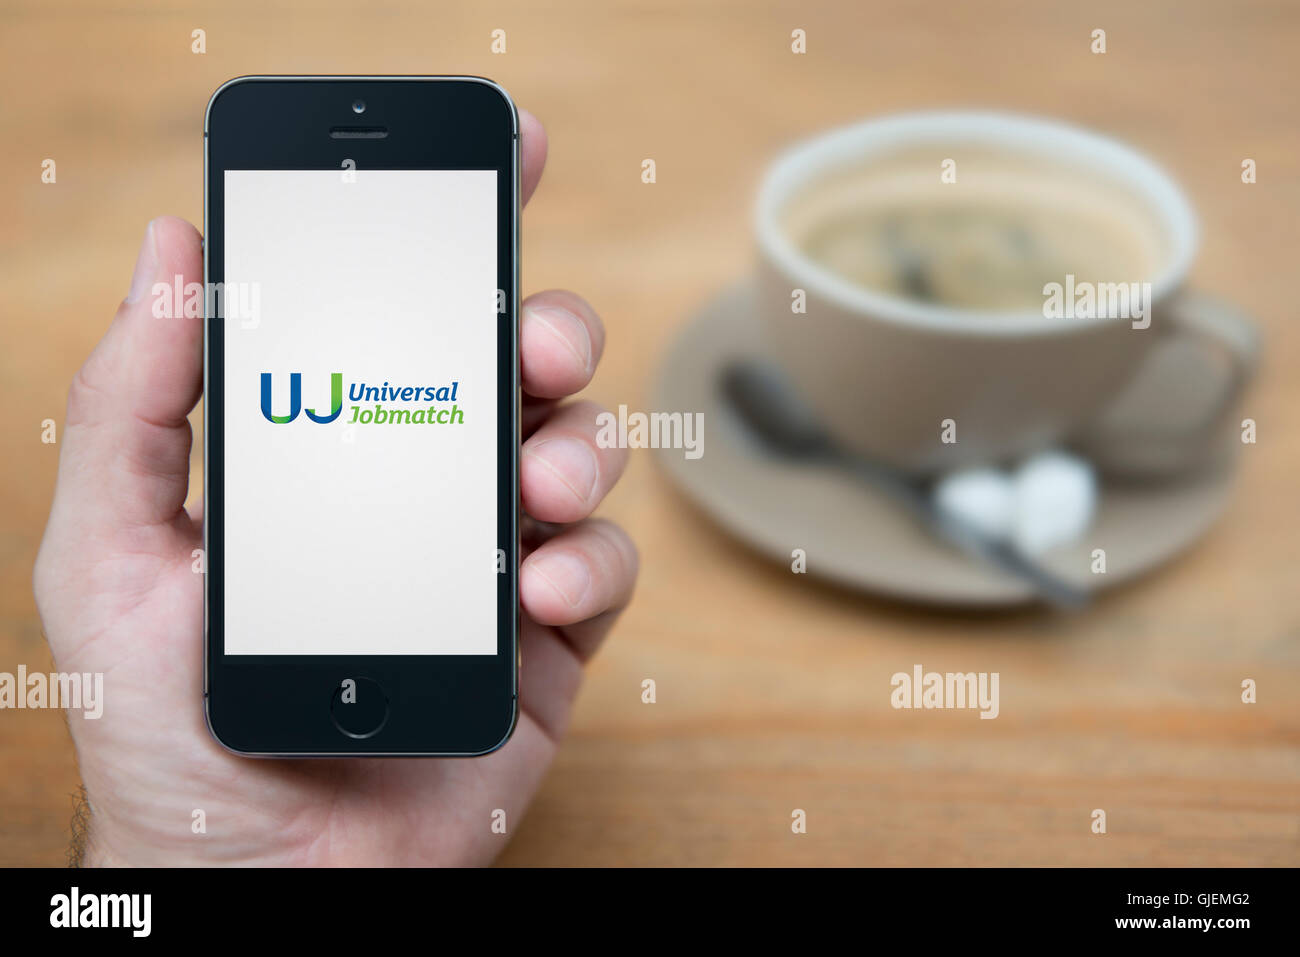 Un hombre mira el iPhone que muestra el logotipo Jobmatch Universal, mientras que se sentó con una taza de café (uso Editorial solamente). Foto de stock